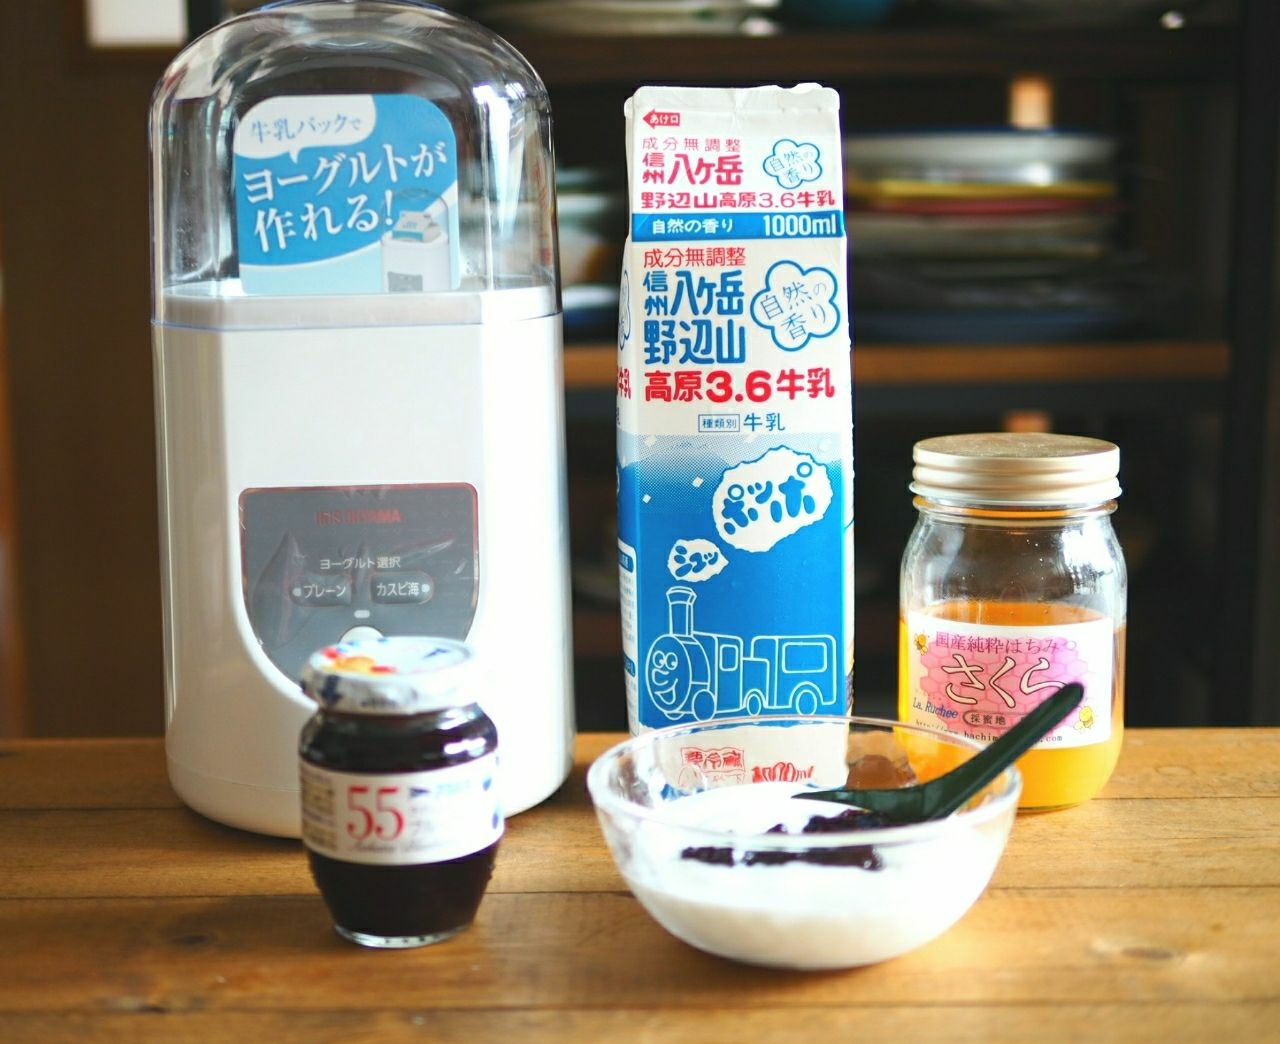 ヨーグルトメーカー アイリスオーヤマ R1 甘酒 牛乳パック 飲むヨーグルト アイリスオーヤマを使ったクチコミ 最近 ヨーグルトは By Sumisumi 18 09 15 12 40 57 Limia リミア